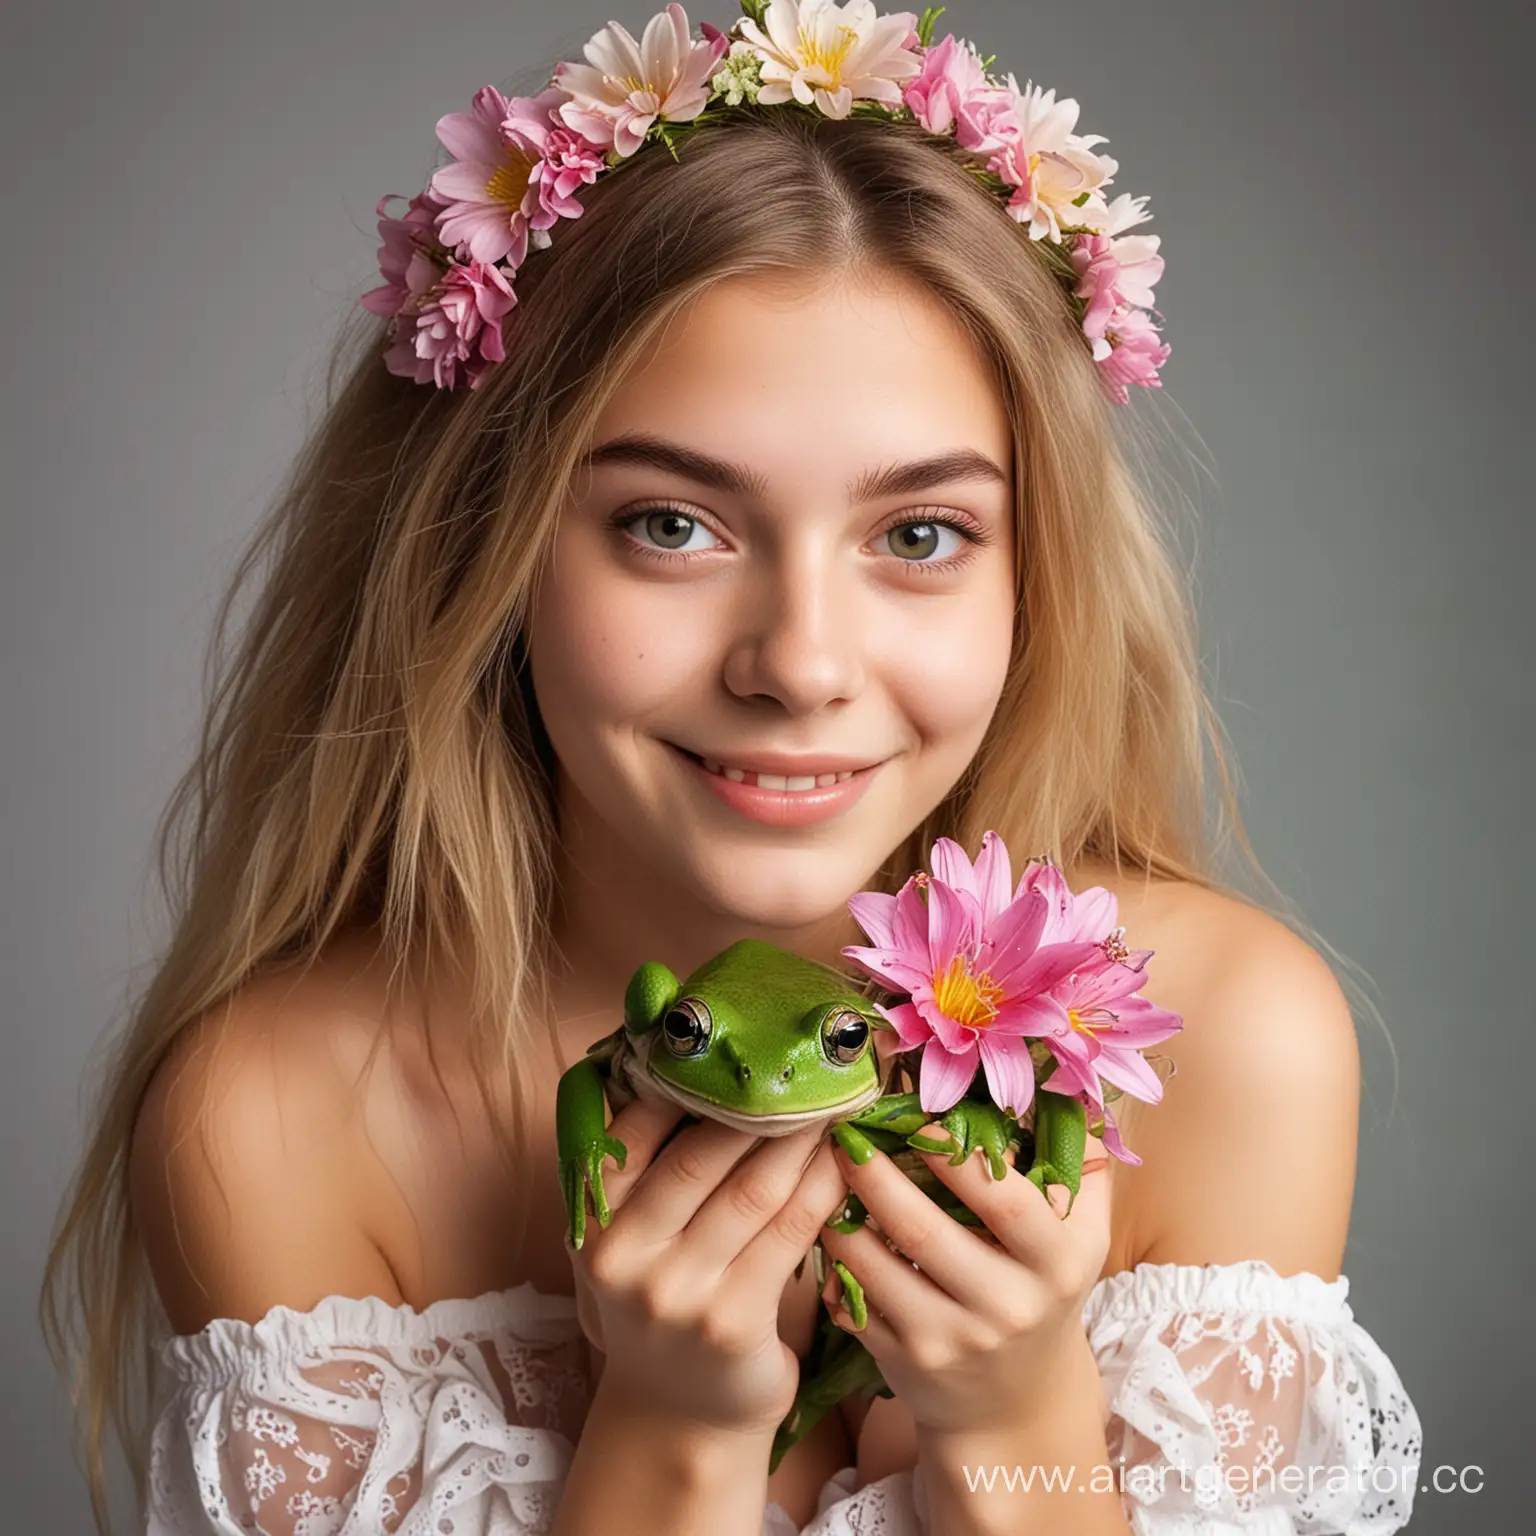 Милая девушка 19 лет с лягушкой и цветами
